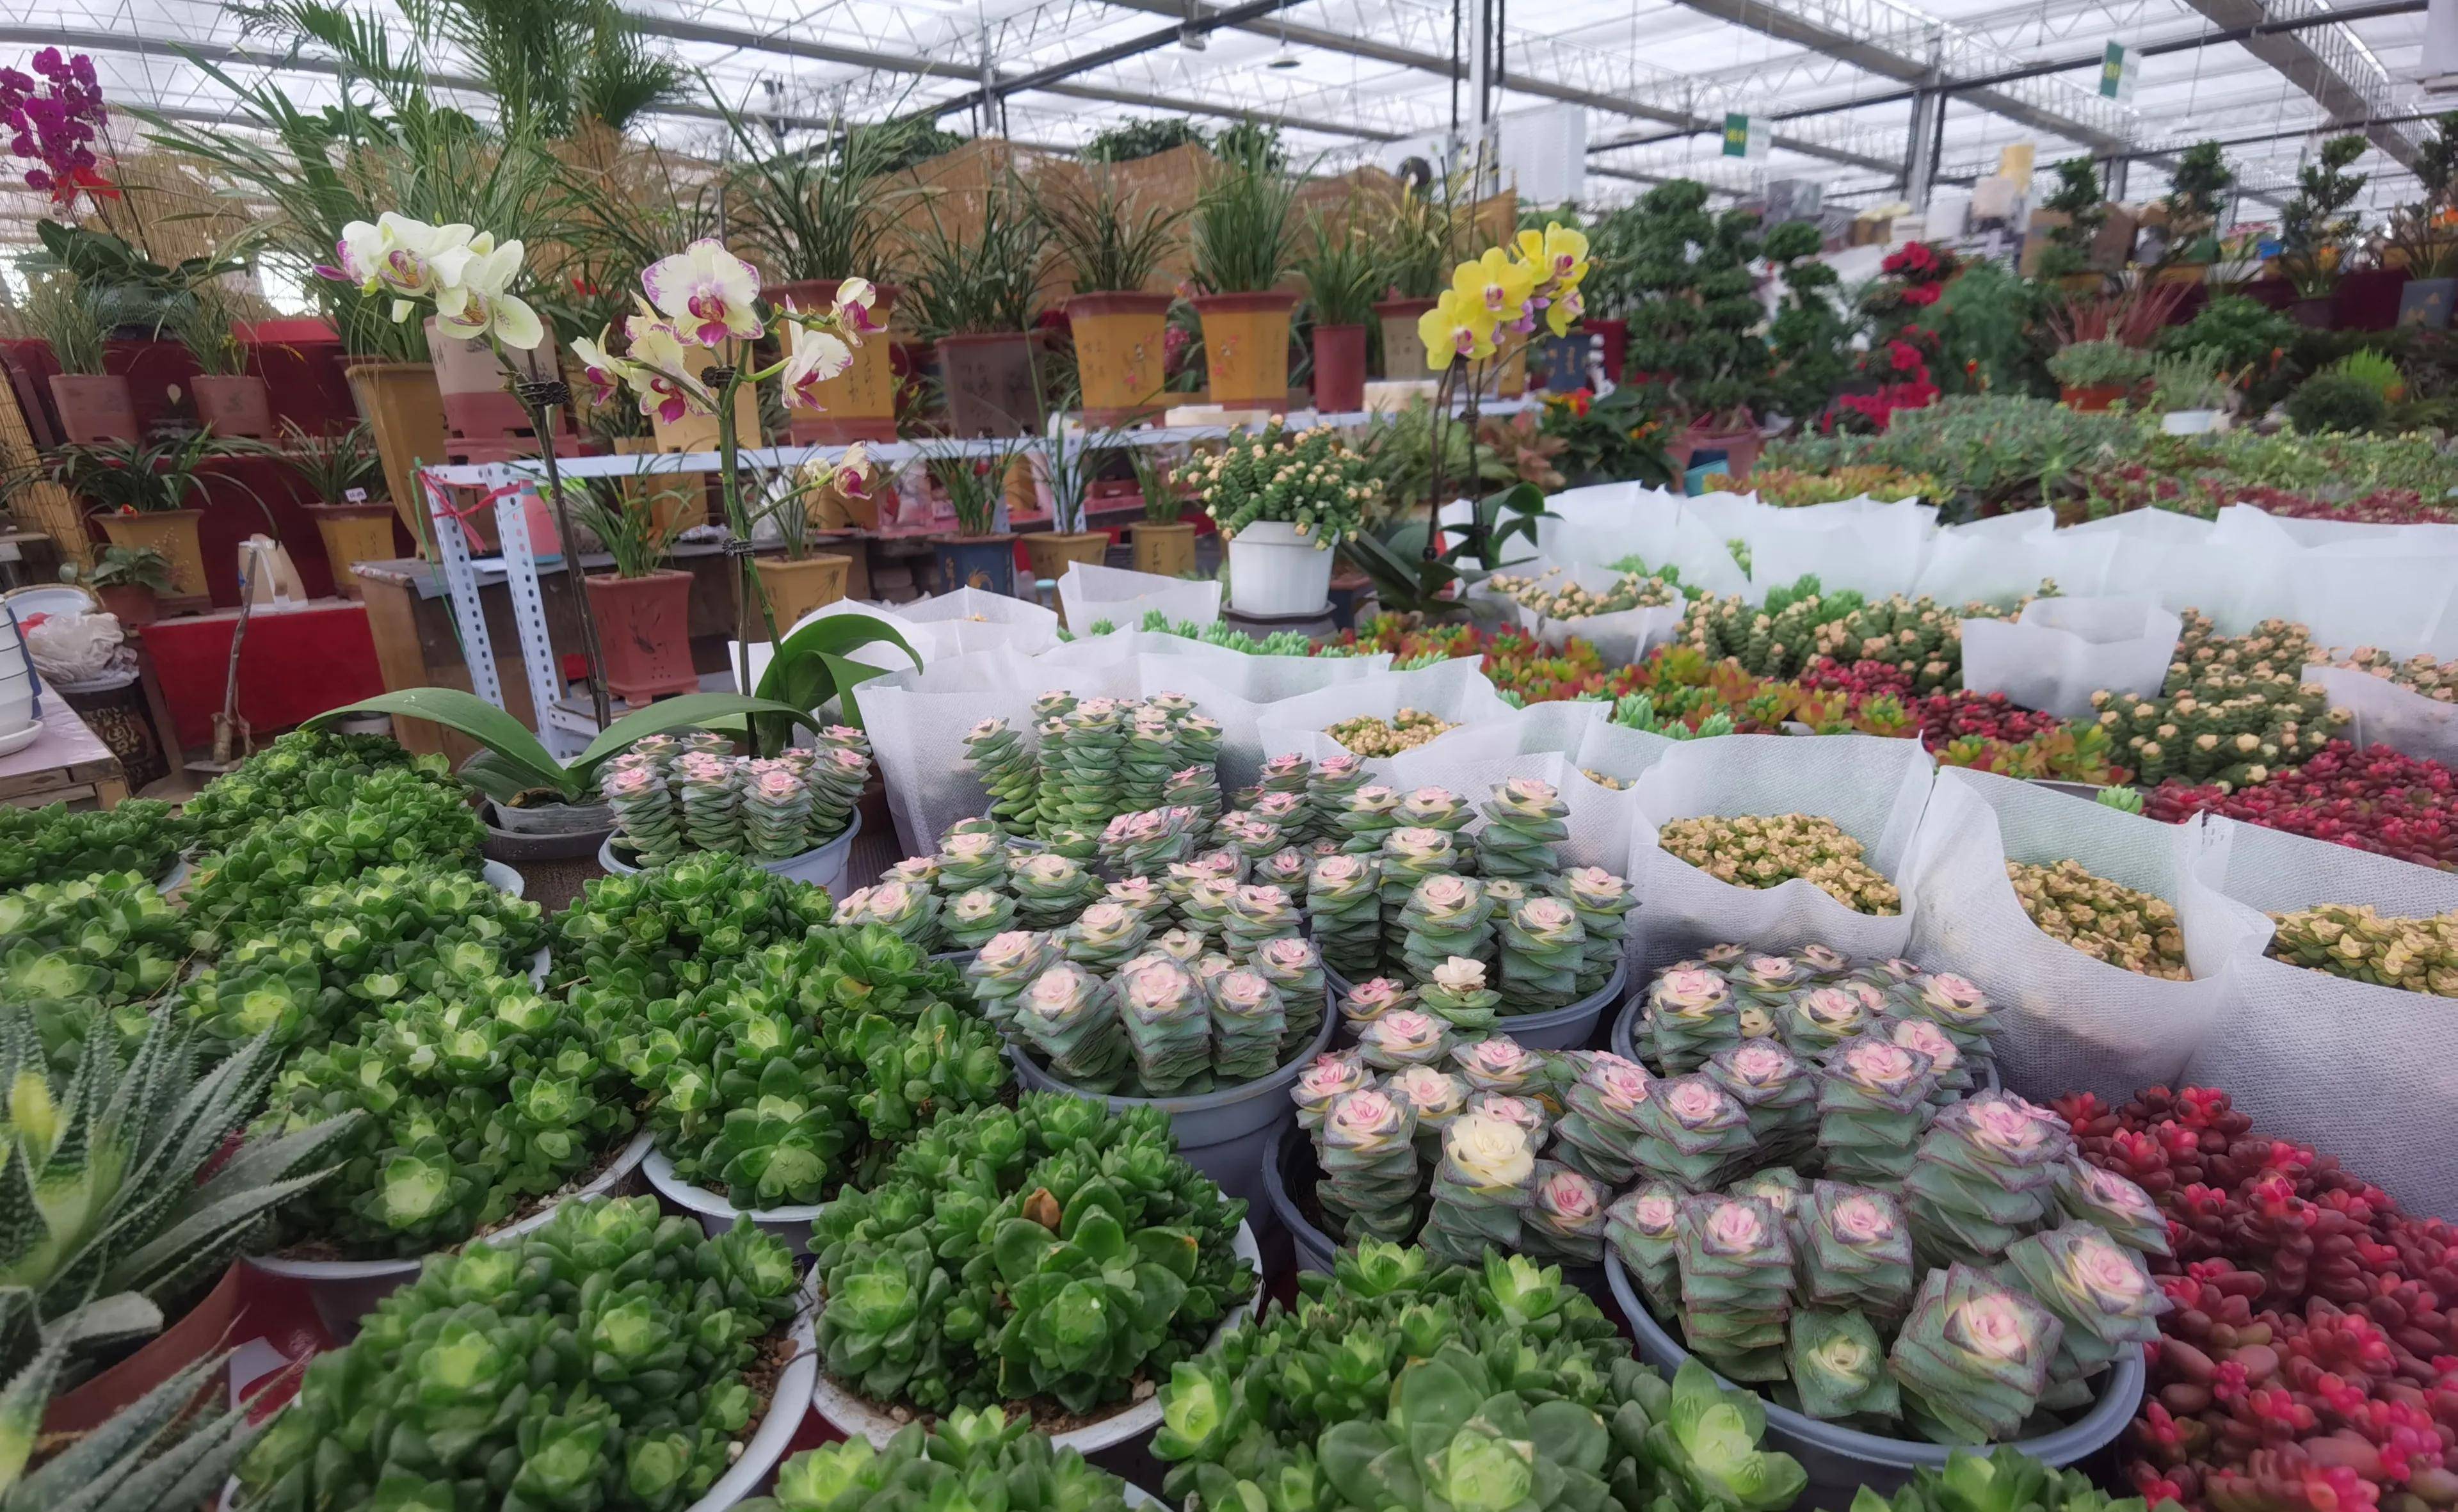 巨坤花卉市场是西安北郊最大的花卉市场,价格便宜,女神节必去